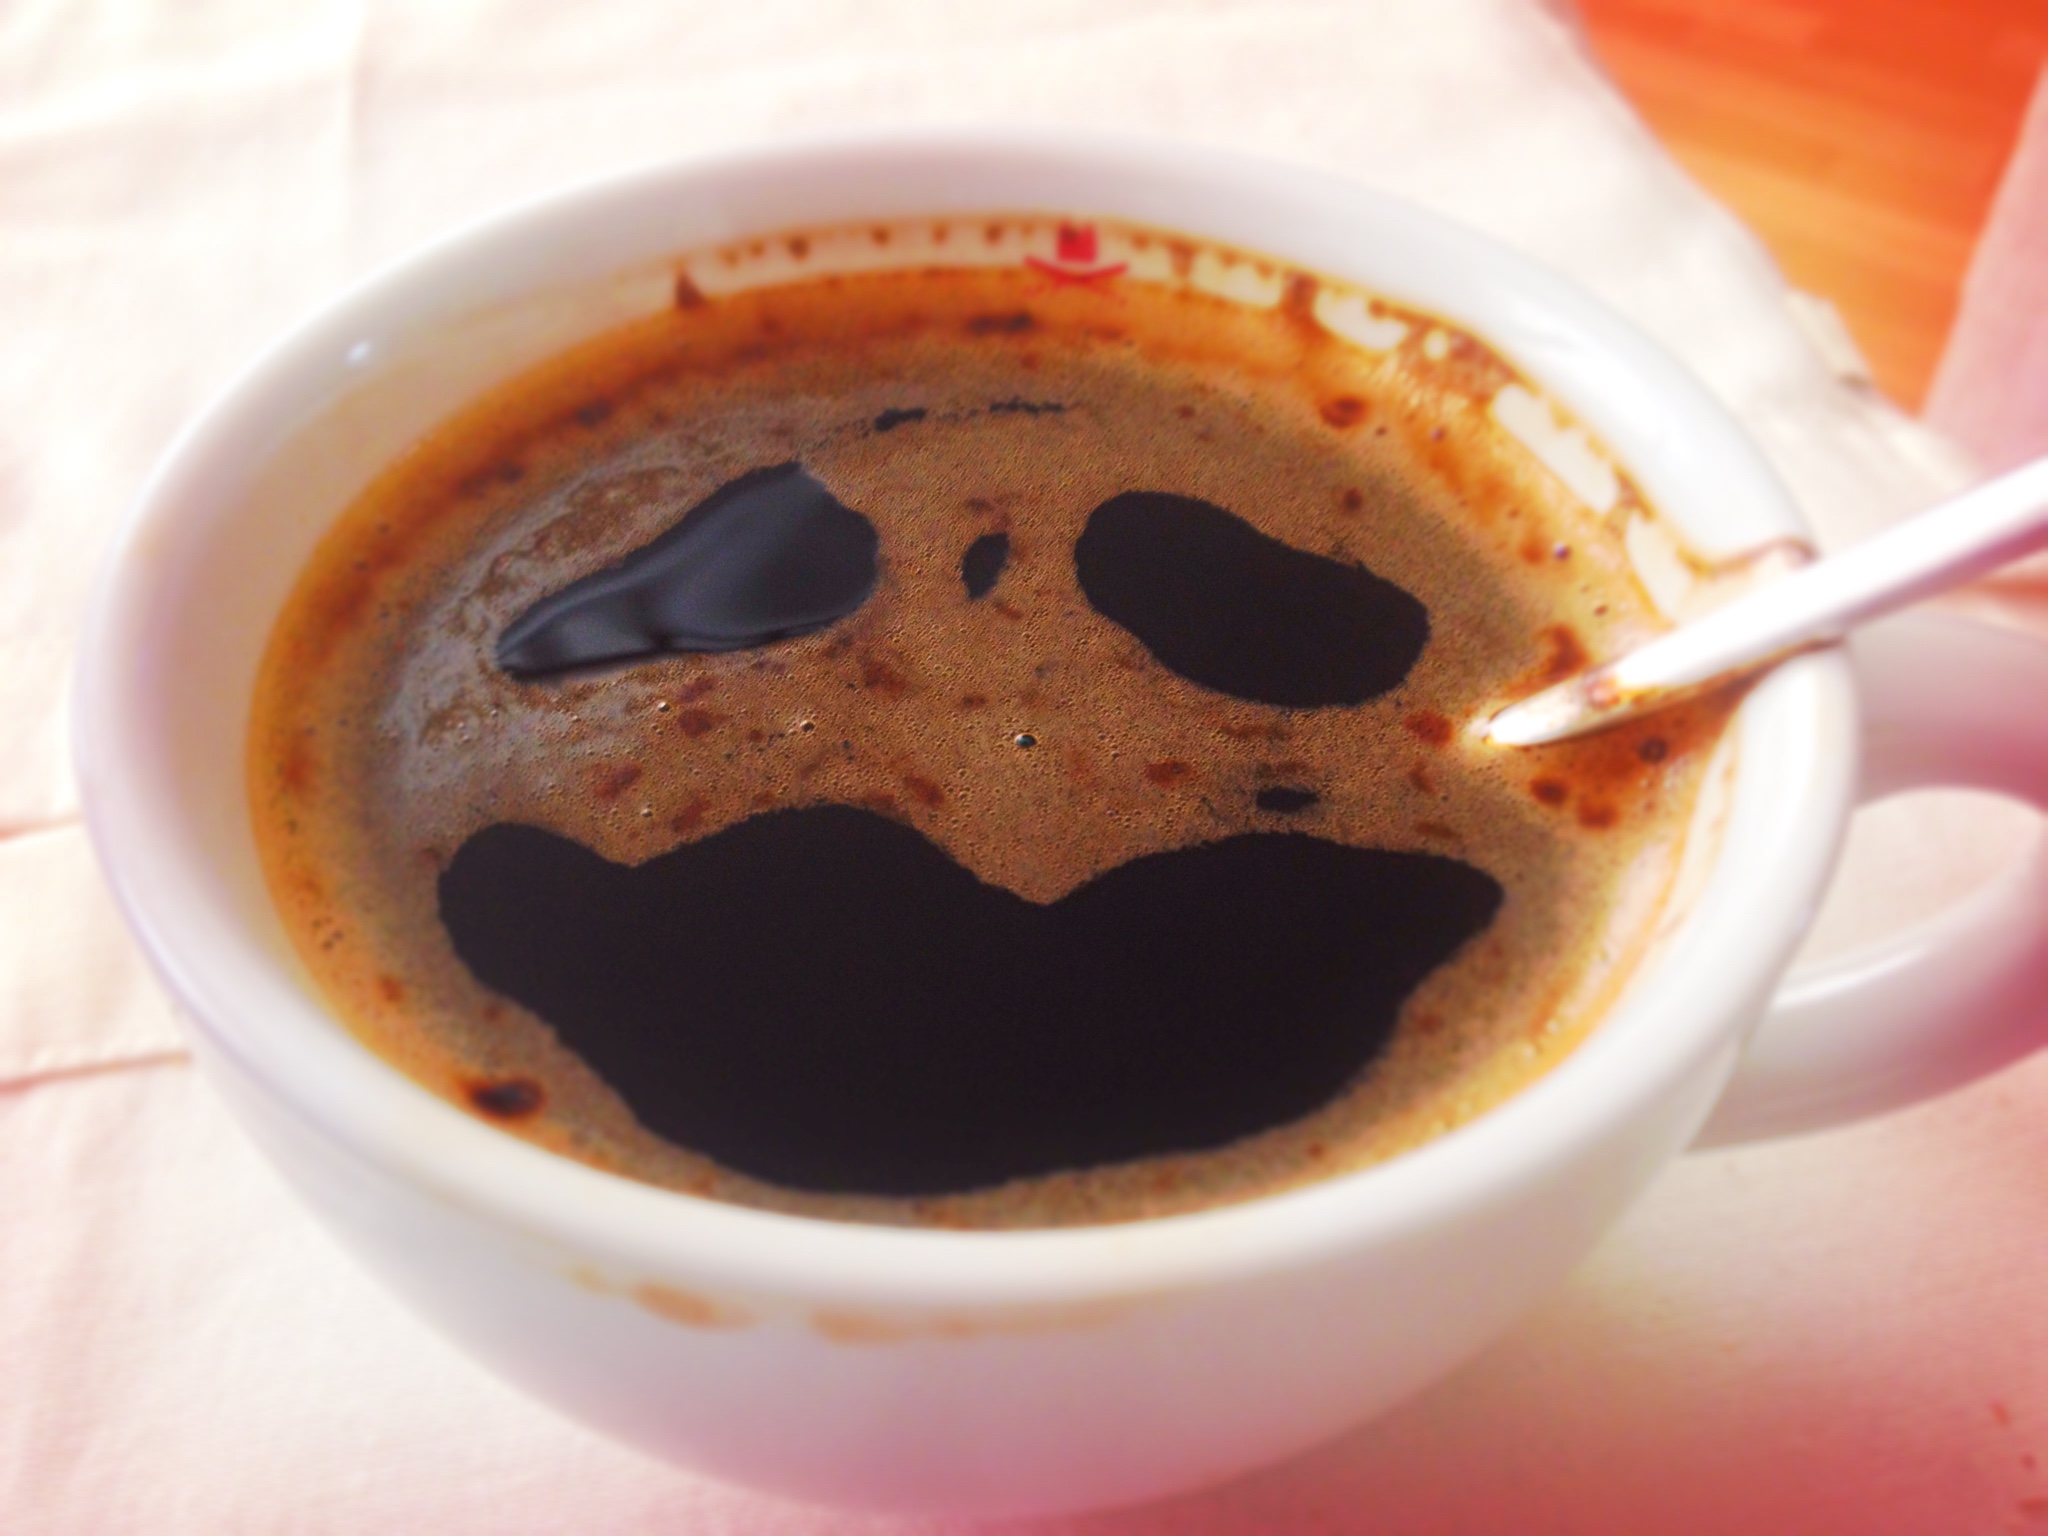 Kaffee in einer Tasse. Drei Löcher in der Crema sehen aus wie ein Gesicht mit zwei traurigen Augen 